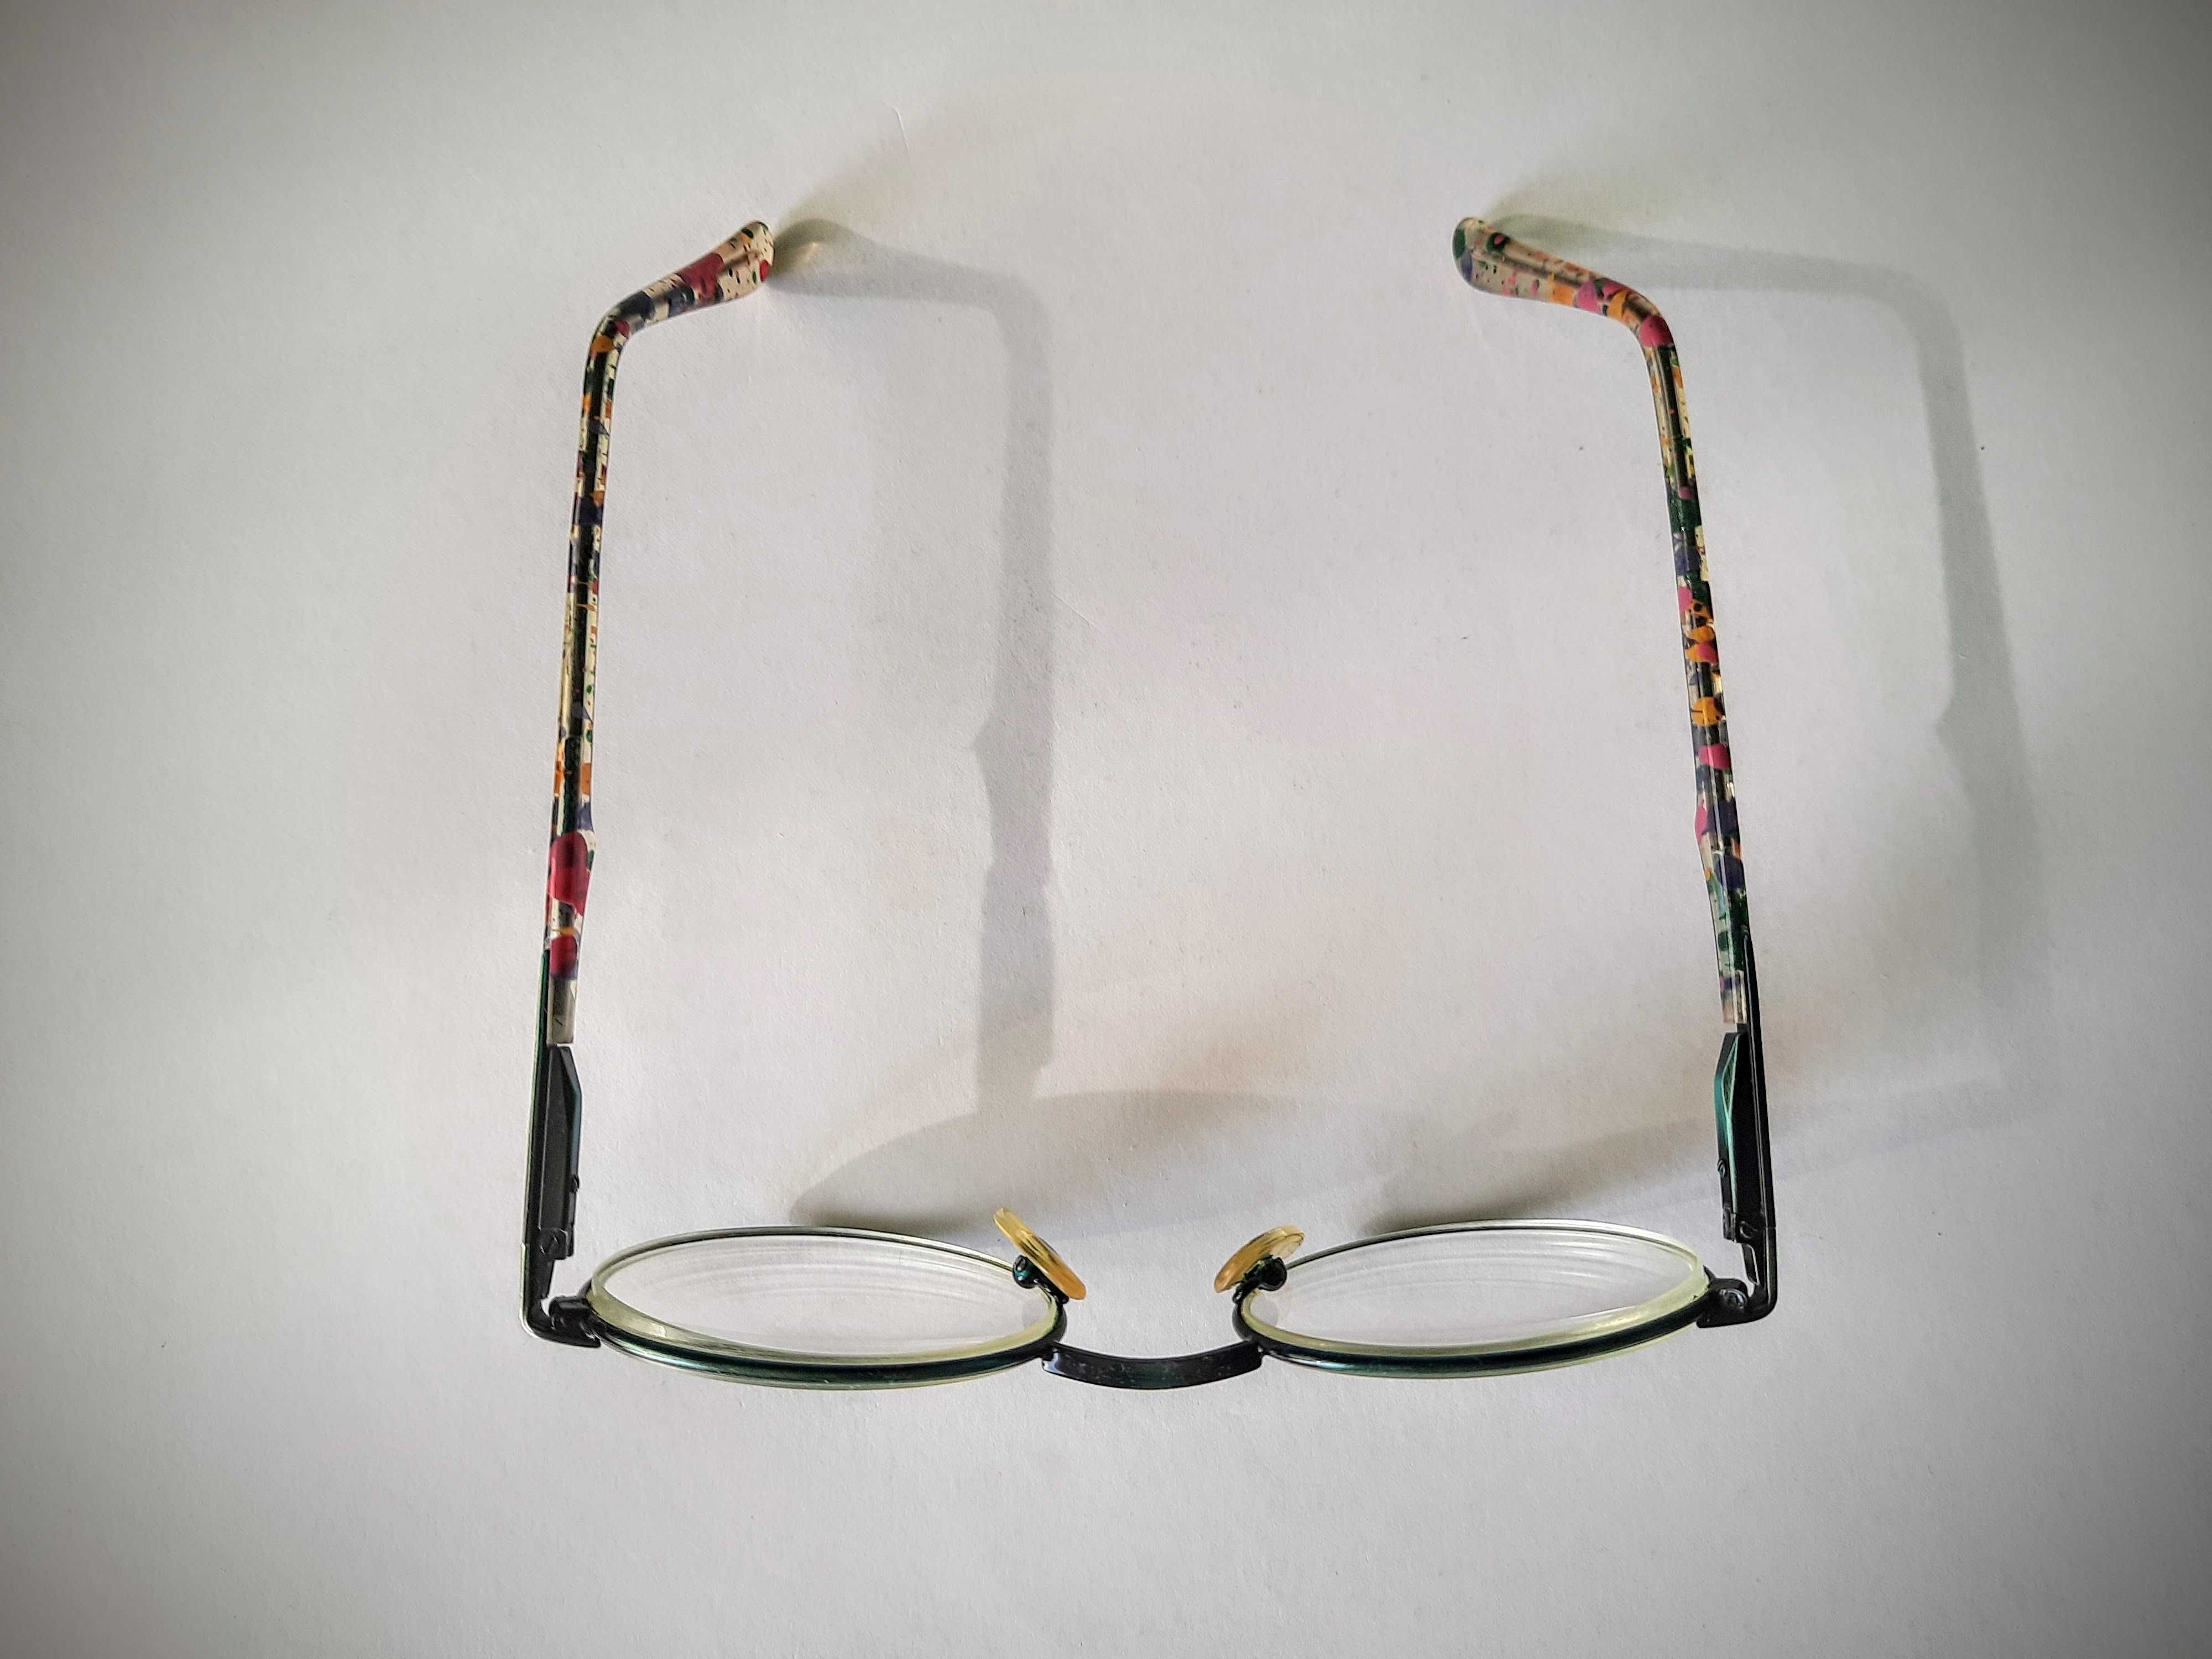 okulary/oprawki okularowe dla dziewczynki